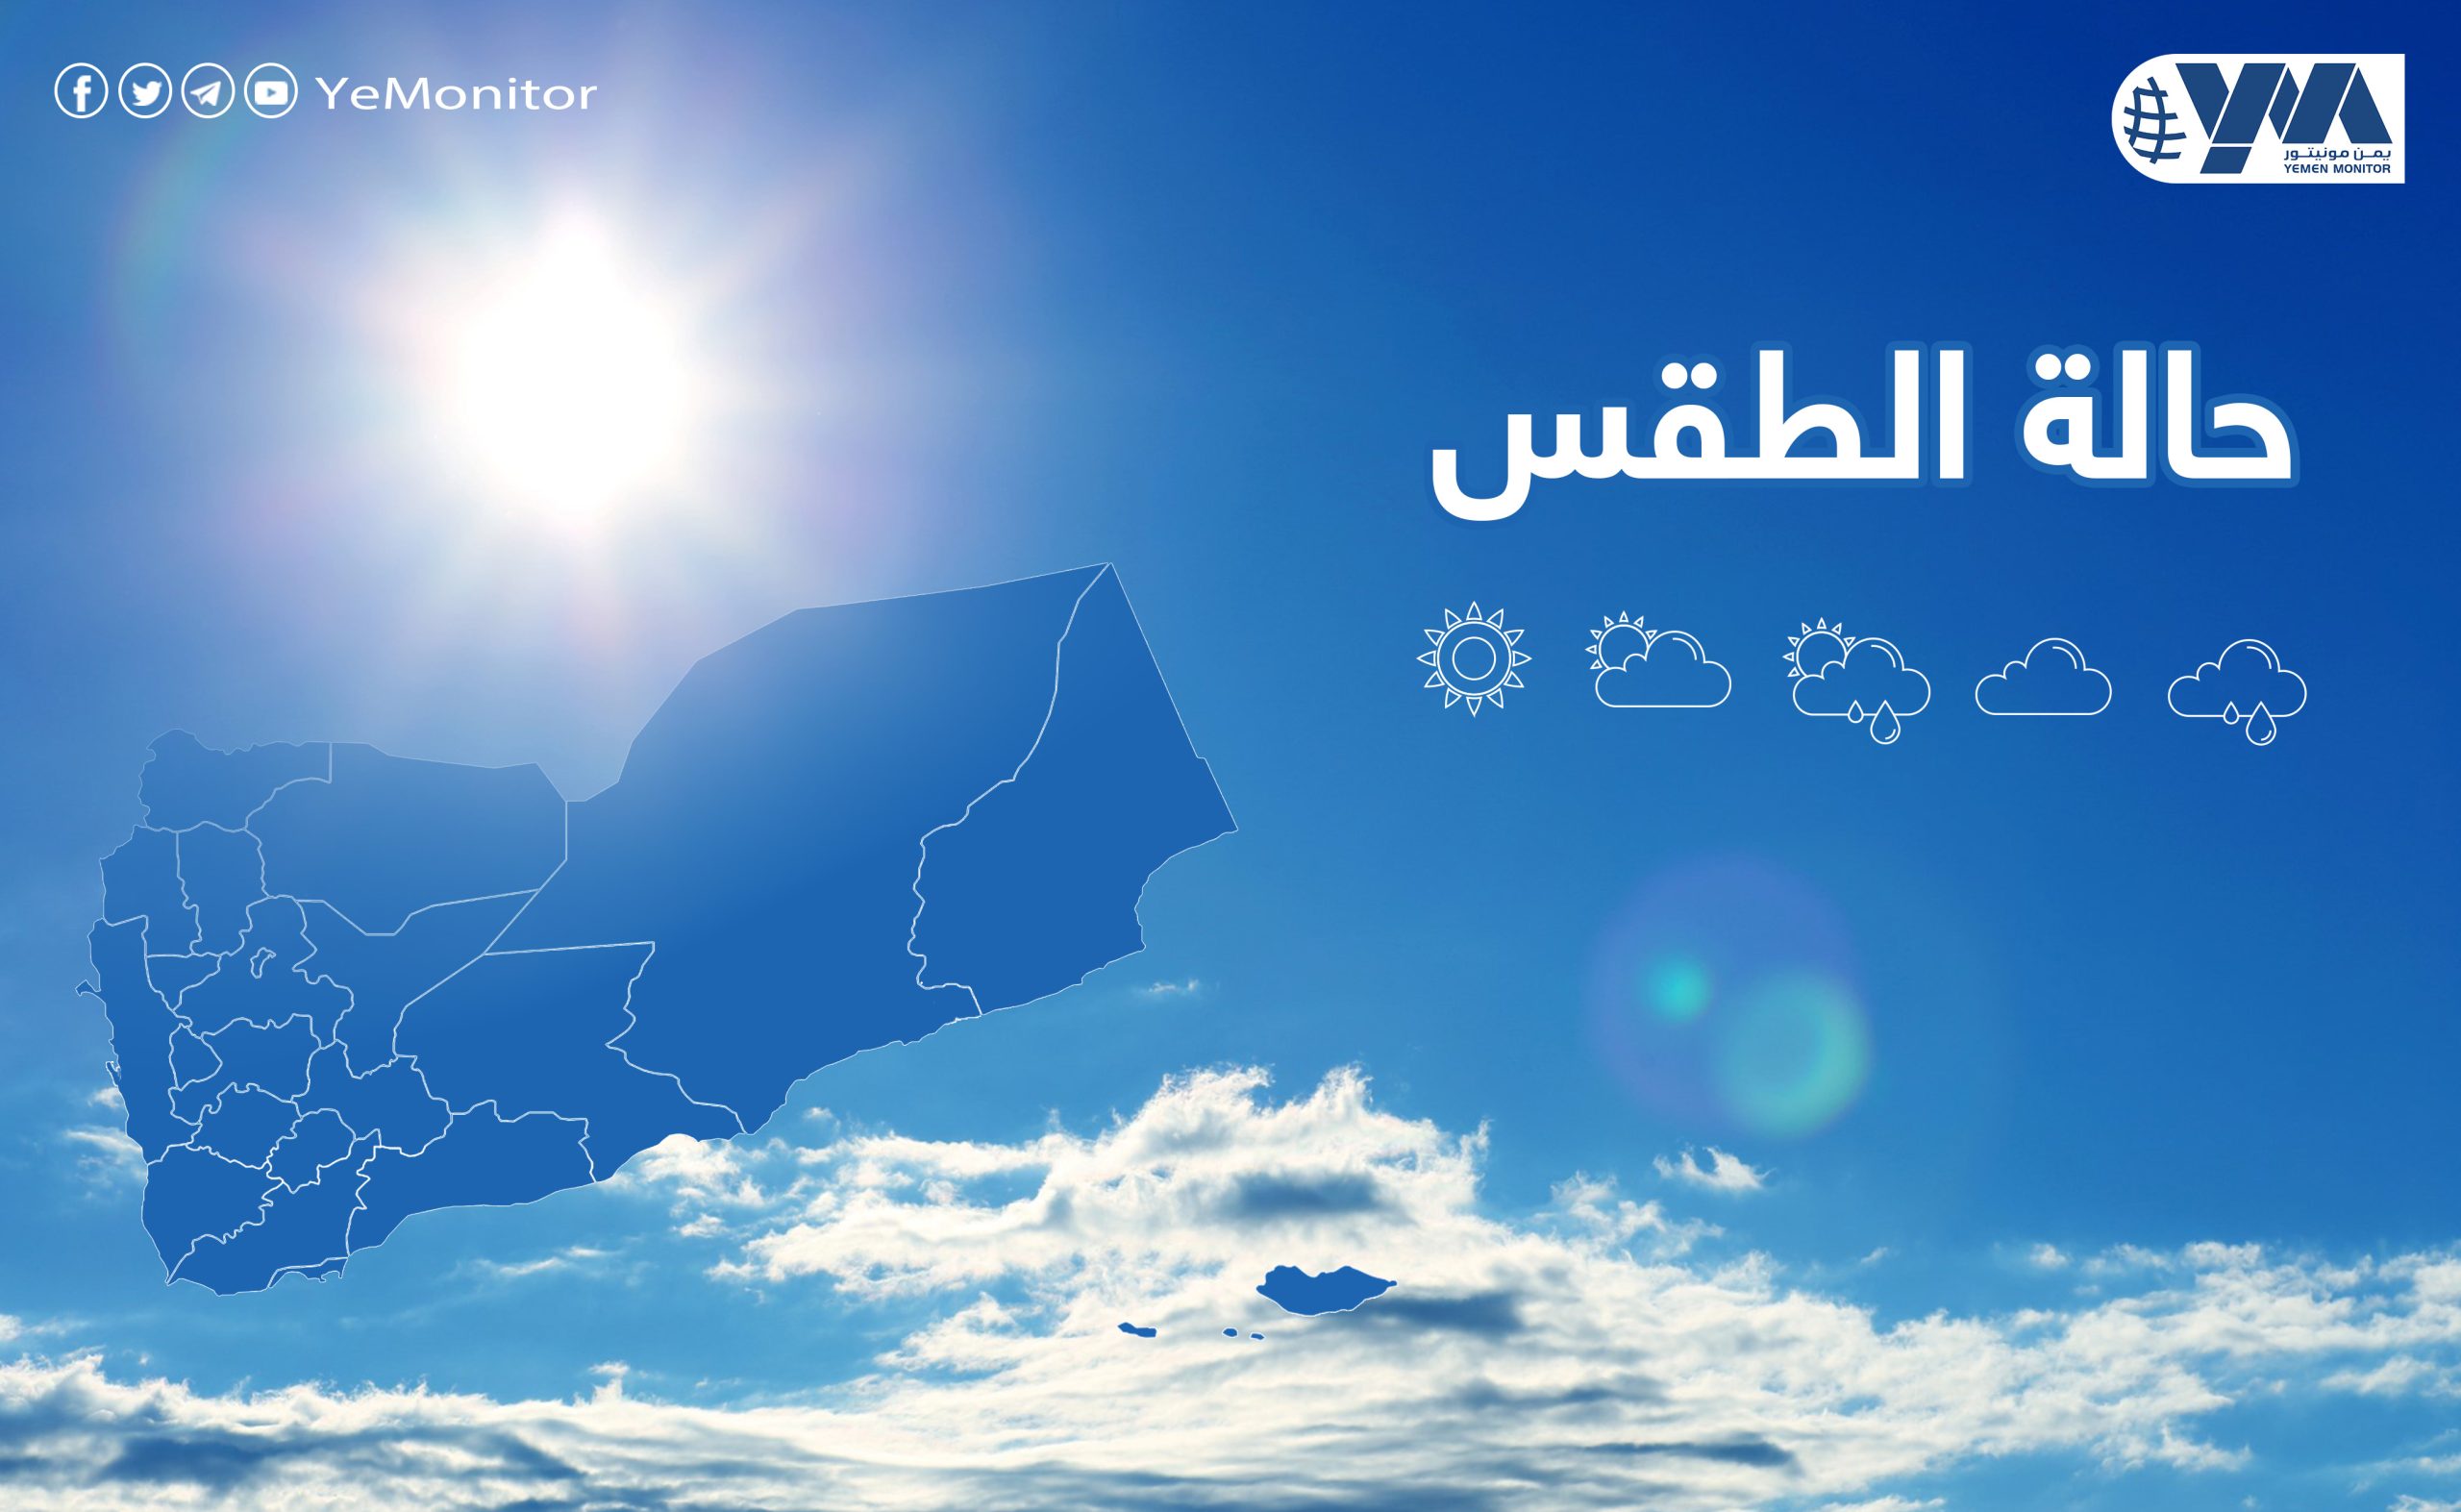 الأرصاد اليمني يحذر من الأجواء الحارة في المناطق الصحراوية والساحلية  